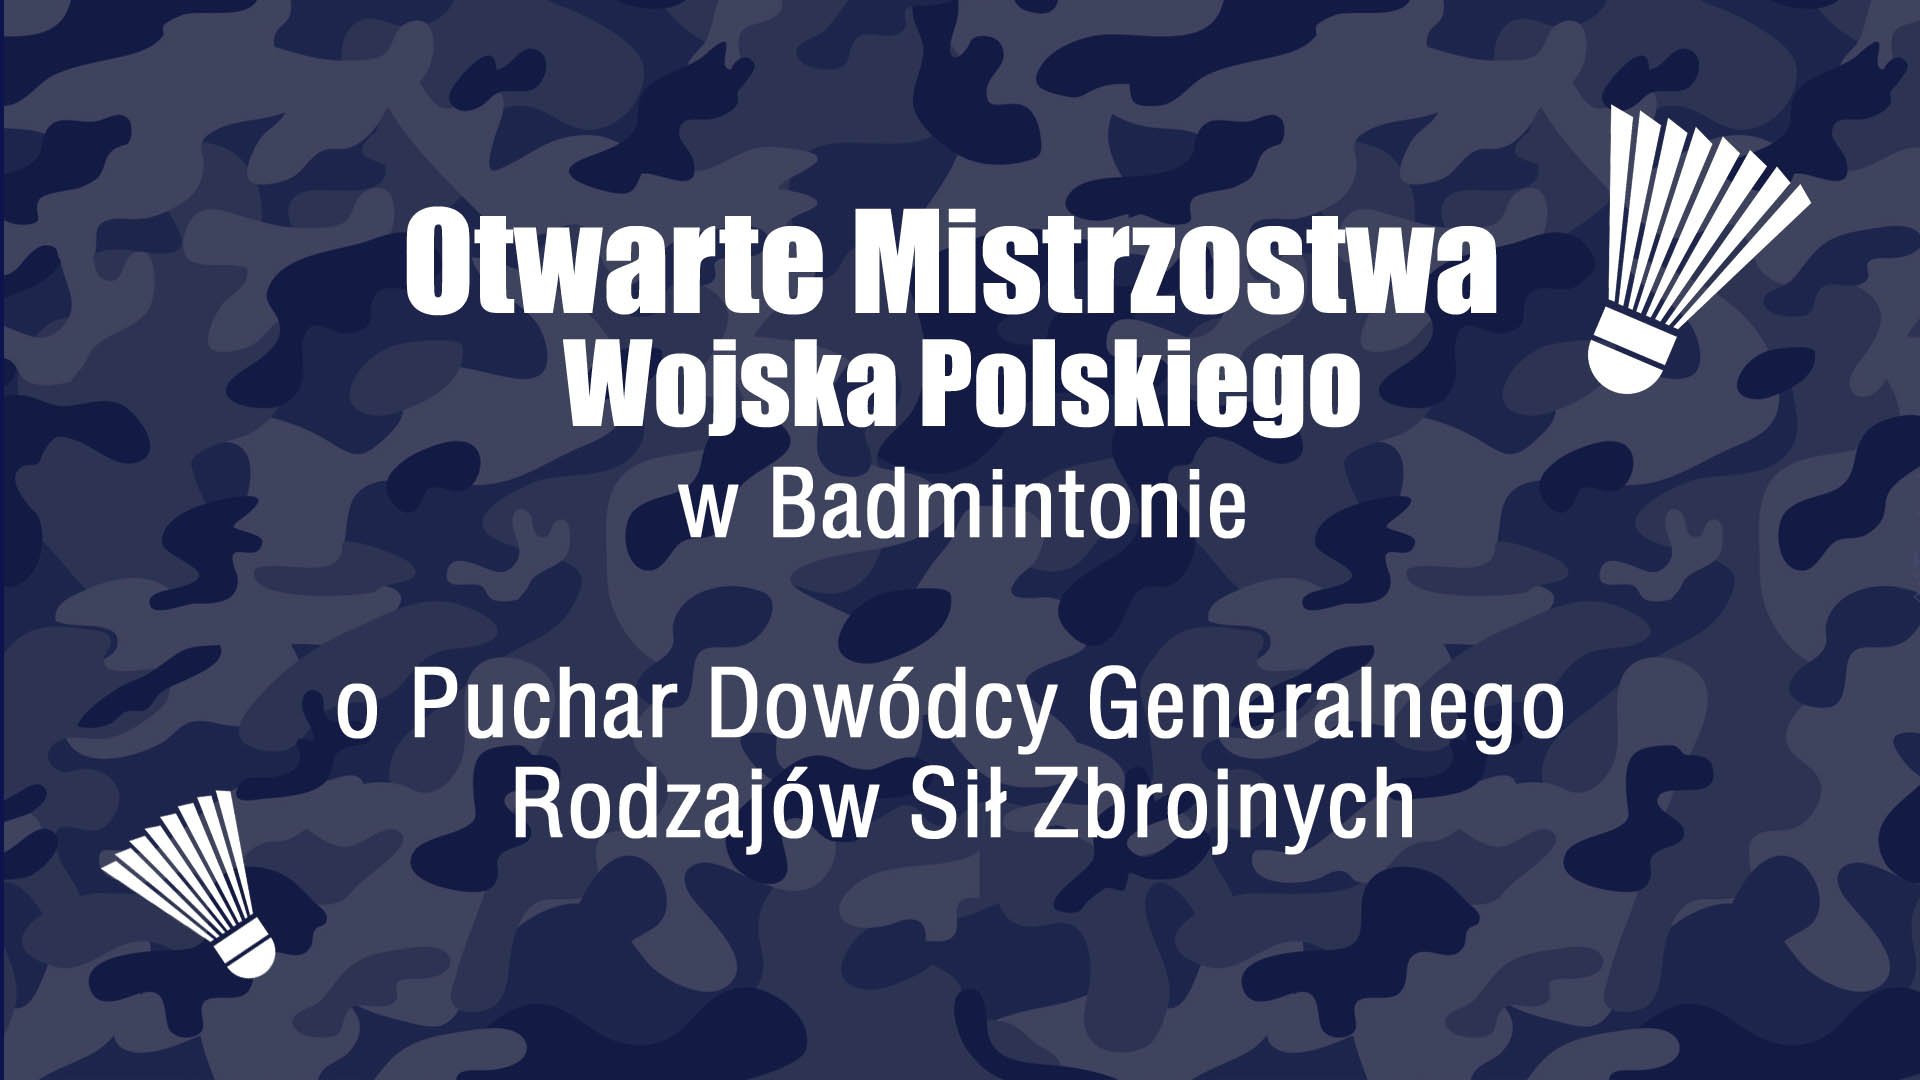 Transmisja LIVE z Mistrzostw Wojska Polskiego – dzień 3.